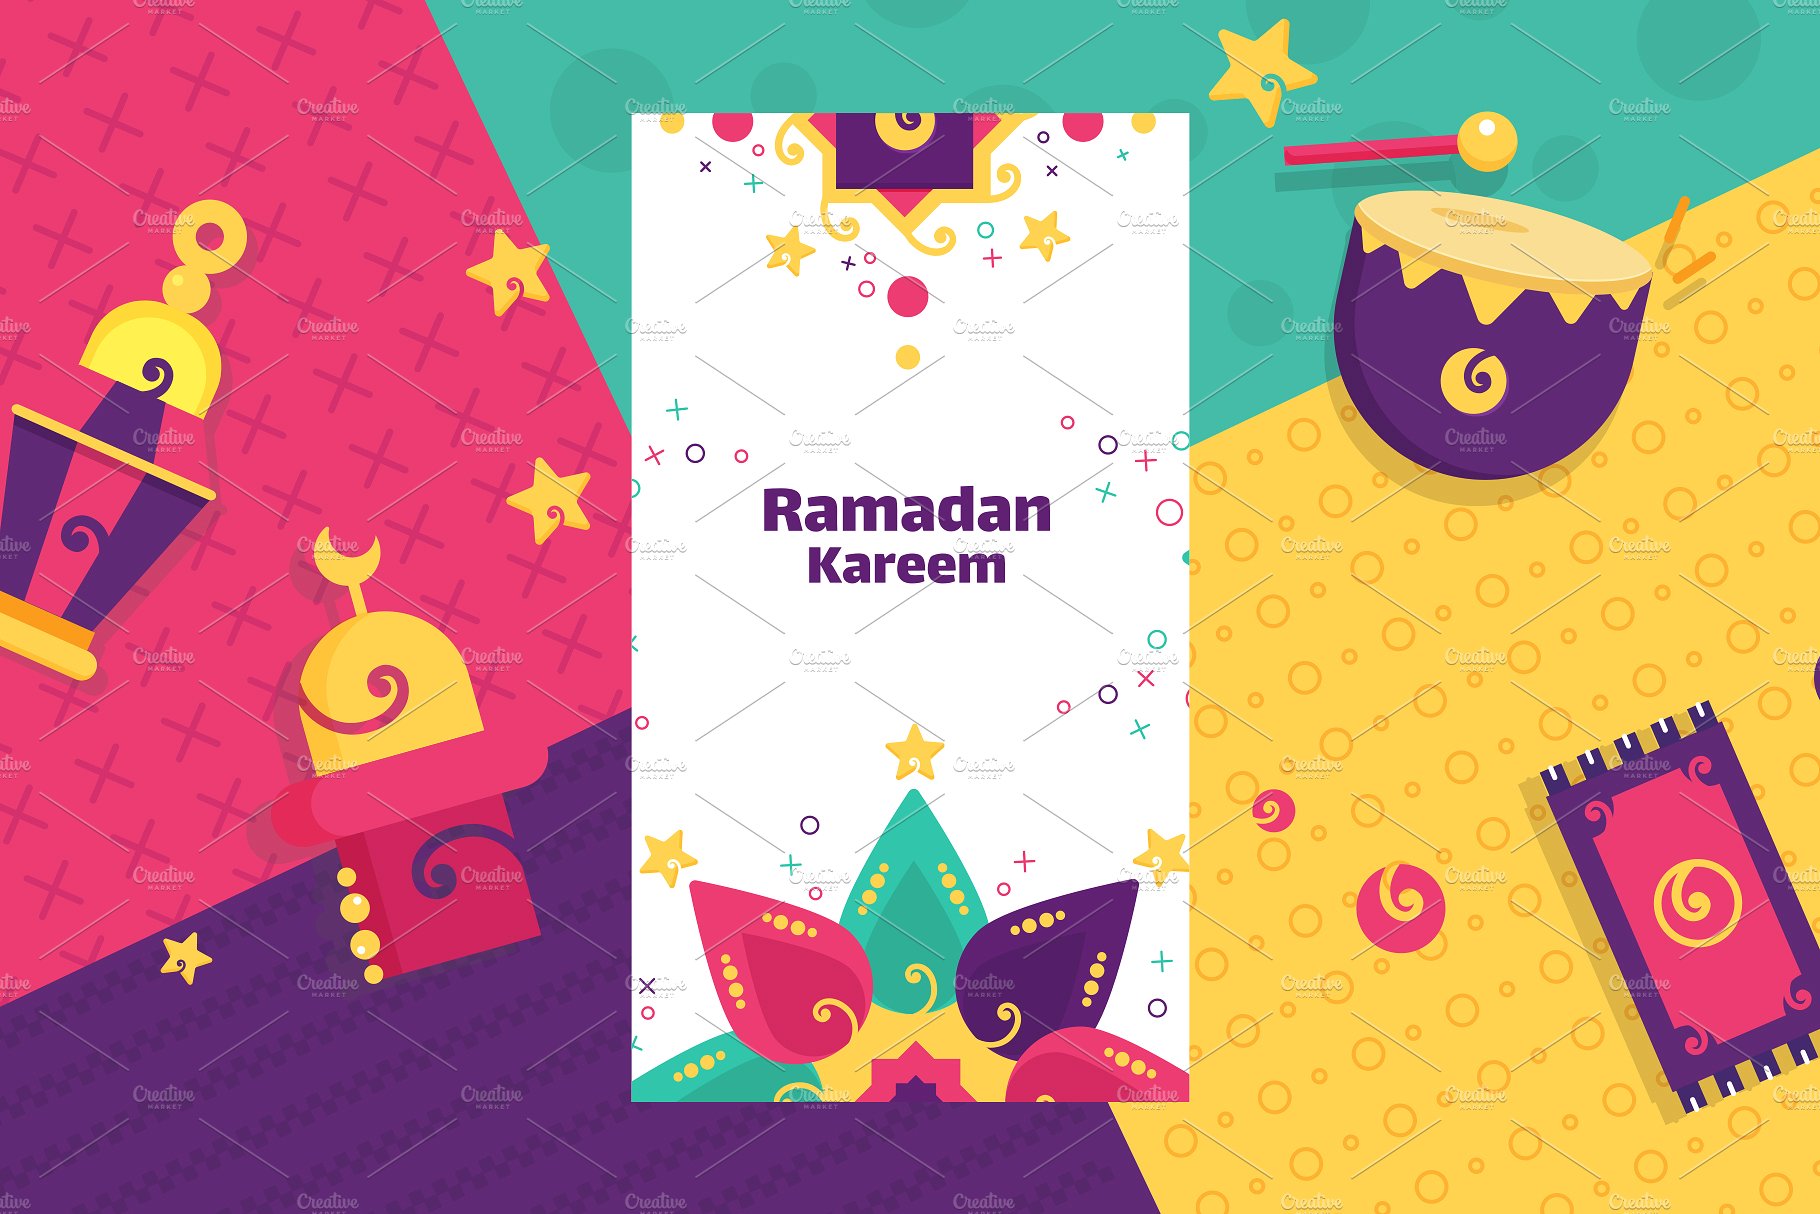 2018年斋月新收藏矢量素材Ramadan New Coll